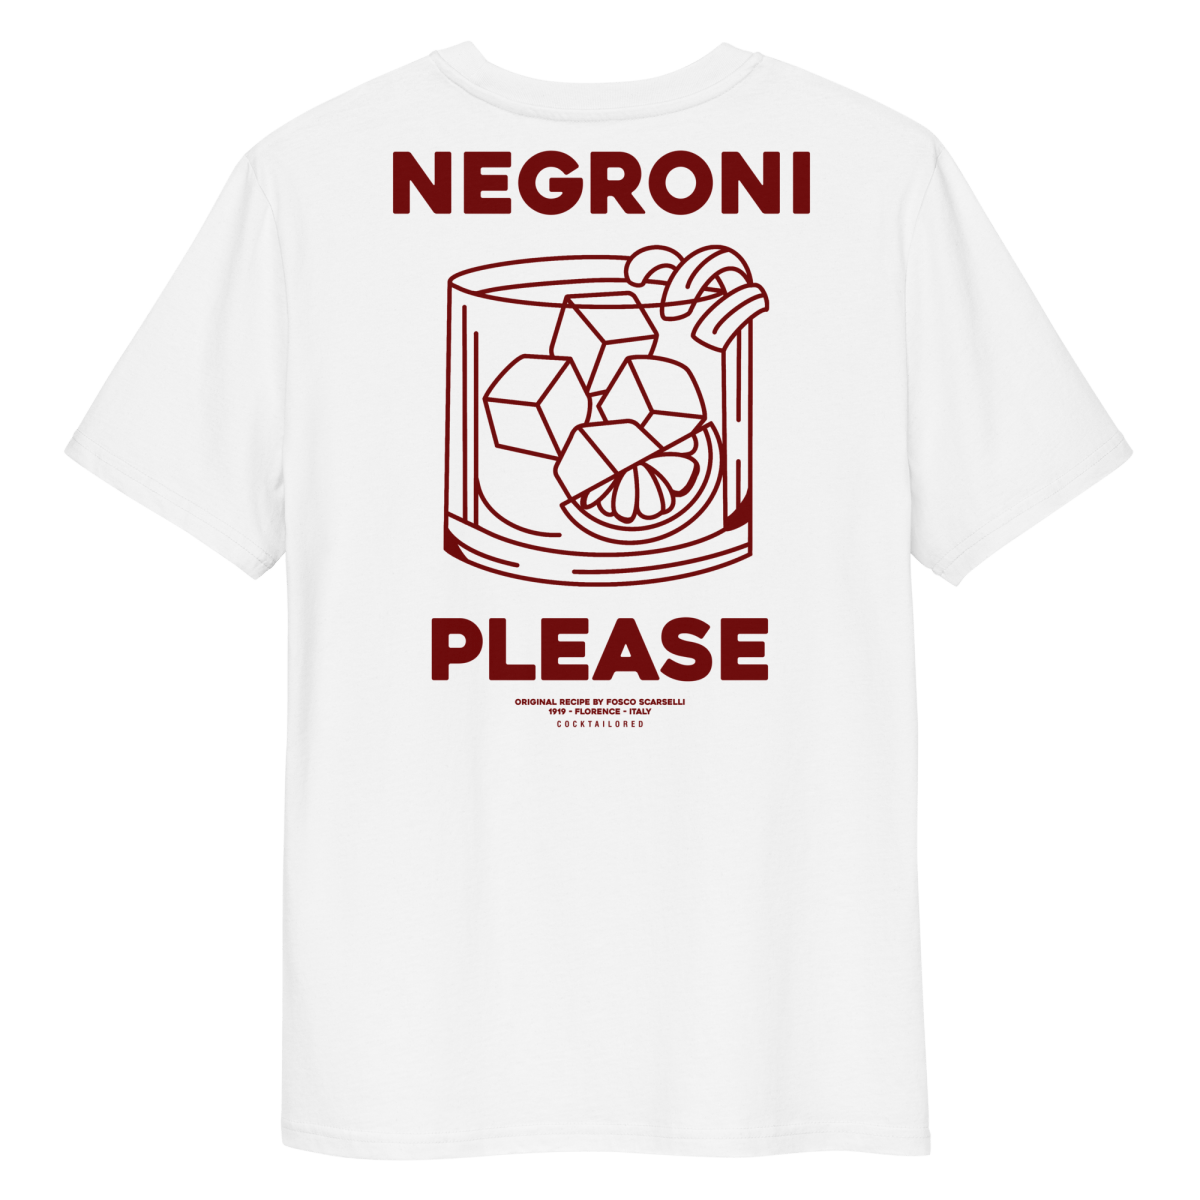 The Negroni Pls. Organic T-shirt